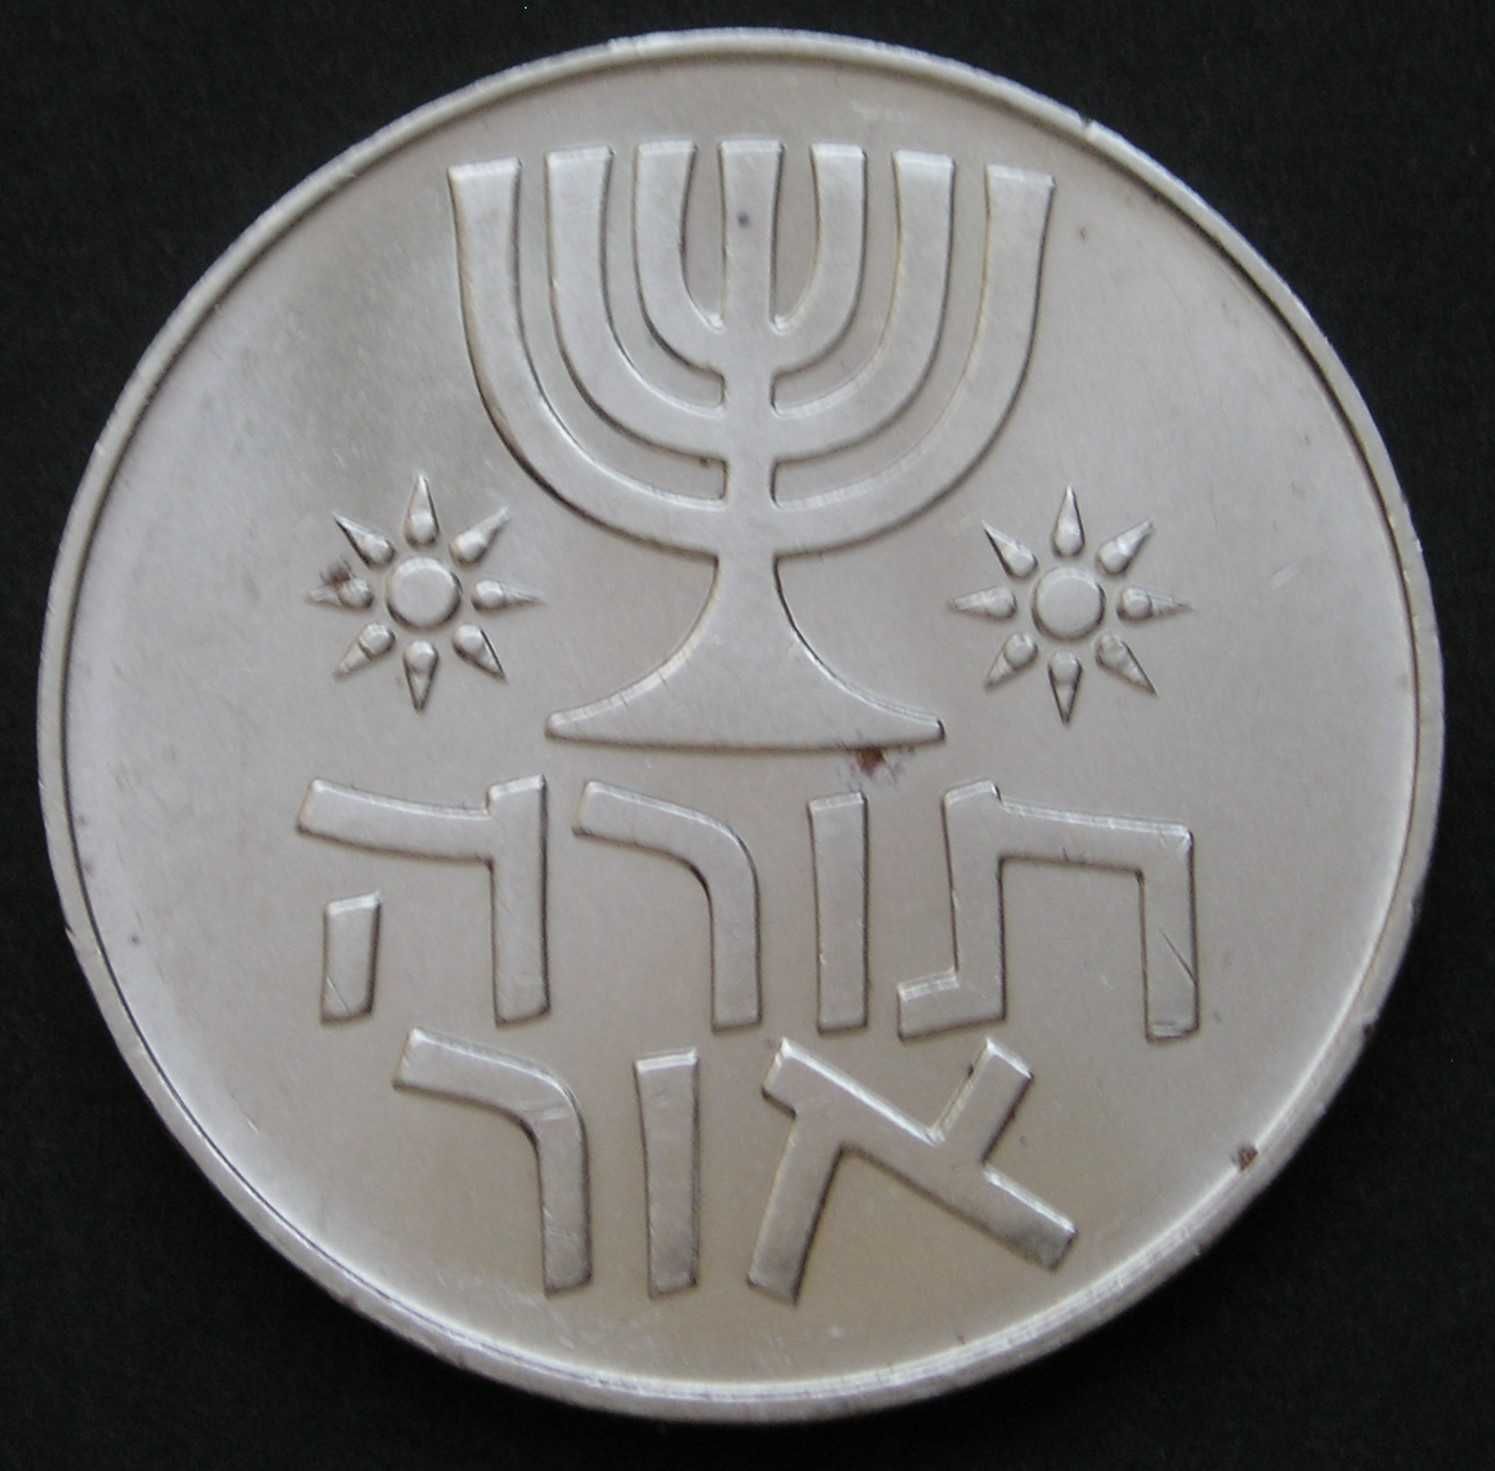 Izrael 1 lira 1958 - hanuka